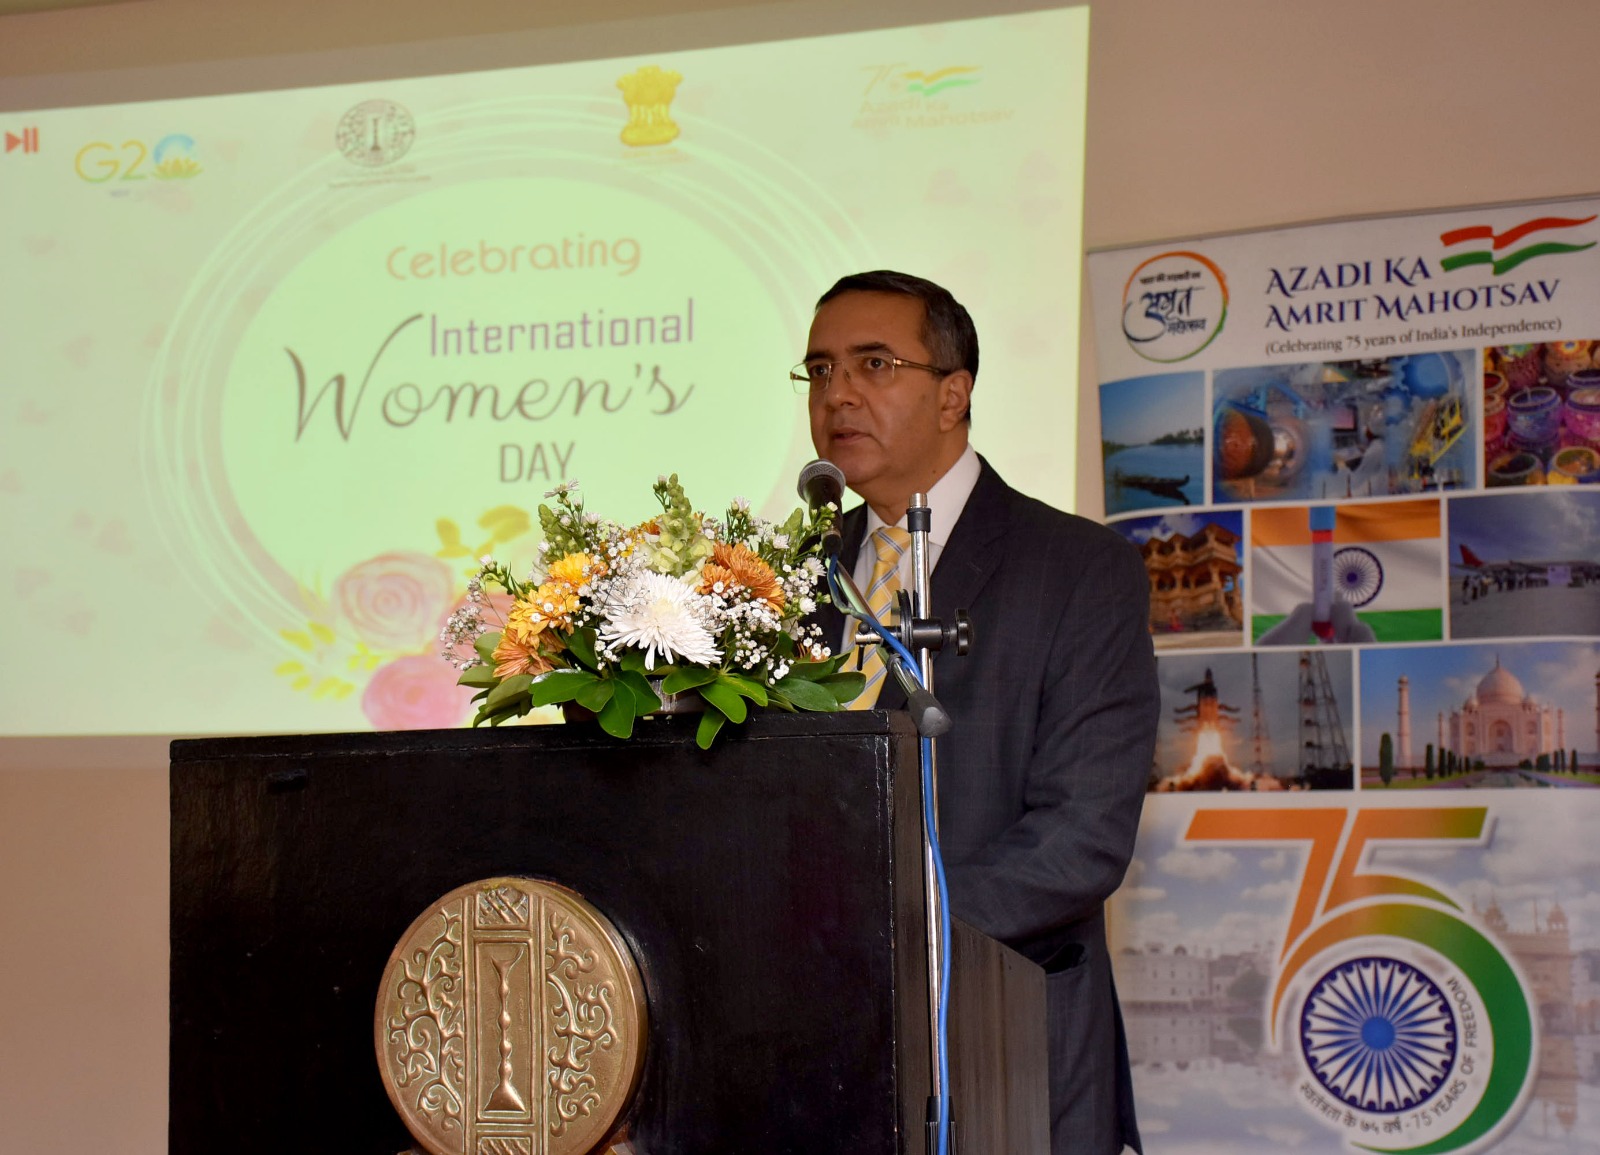 الاحتفال باليوم العالمي للمرأة في مركز مولانا آزاد الثقافي الهندي بالقاهرة